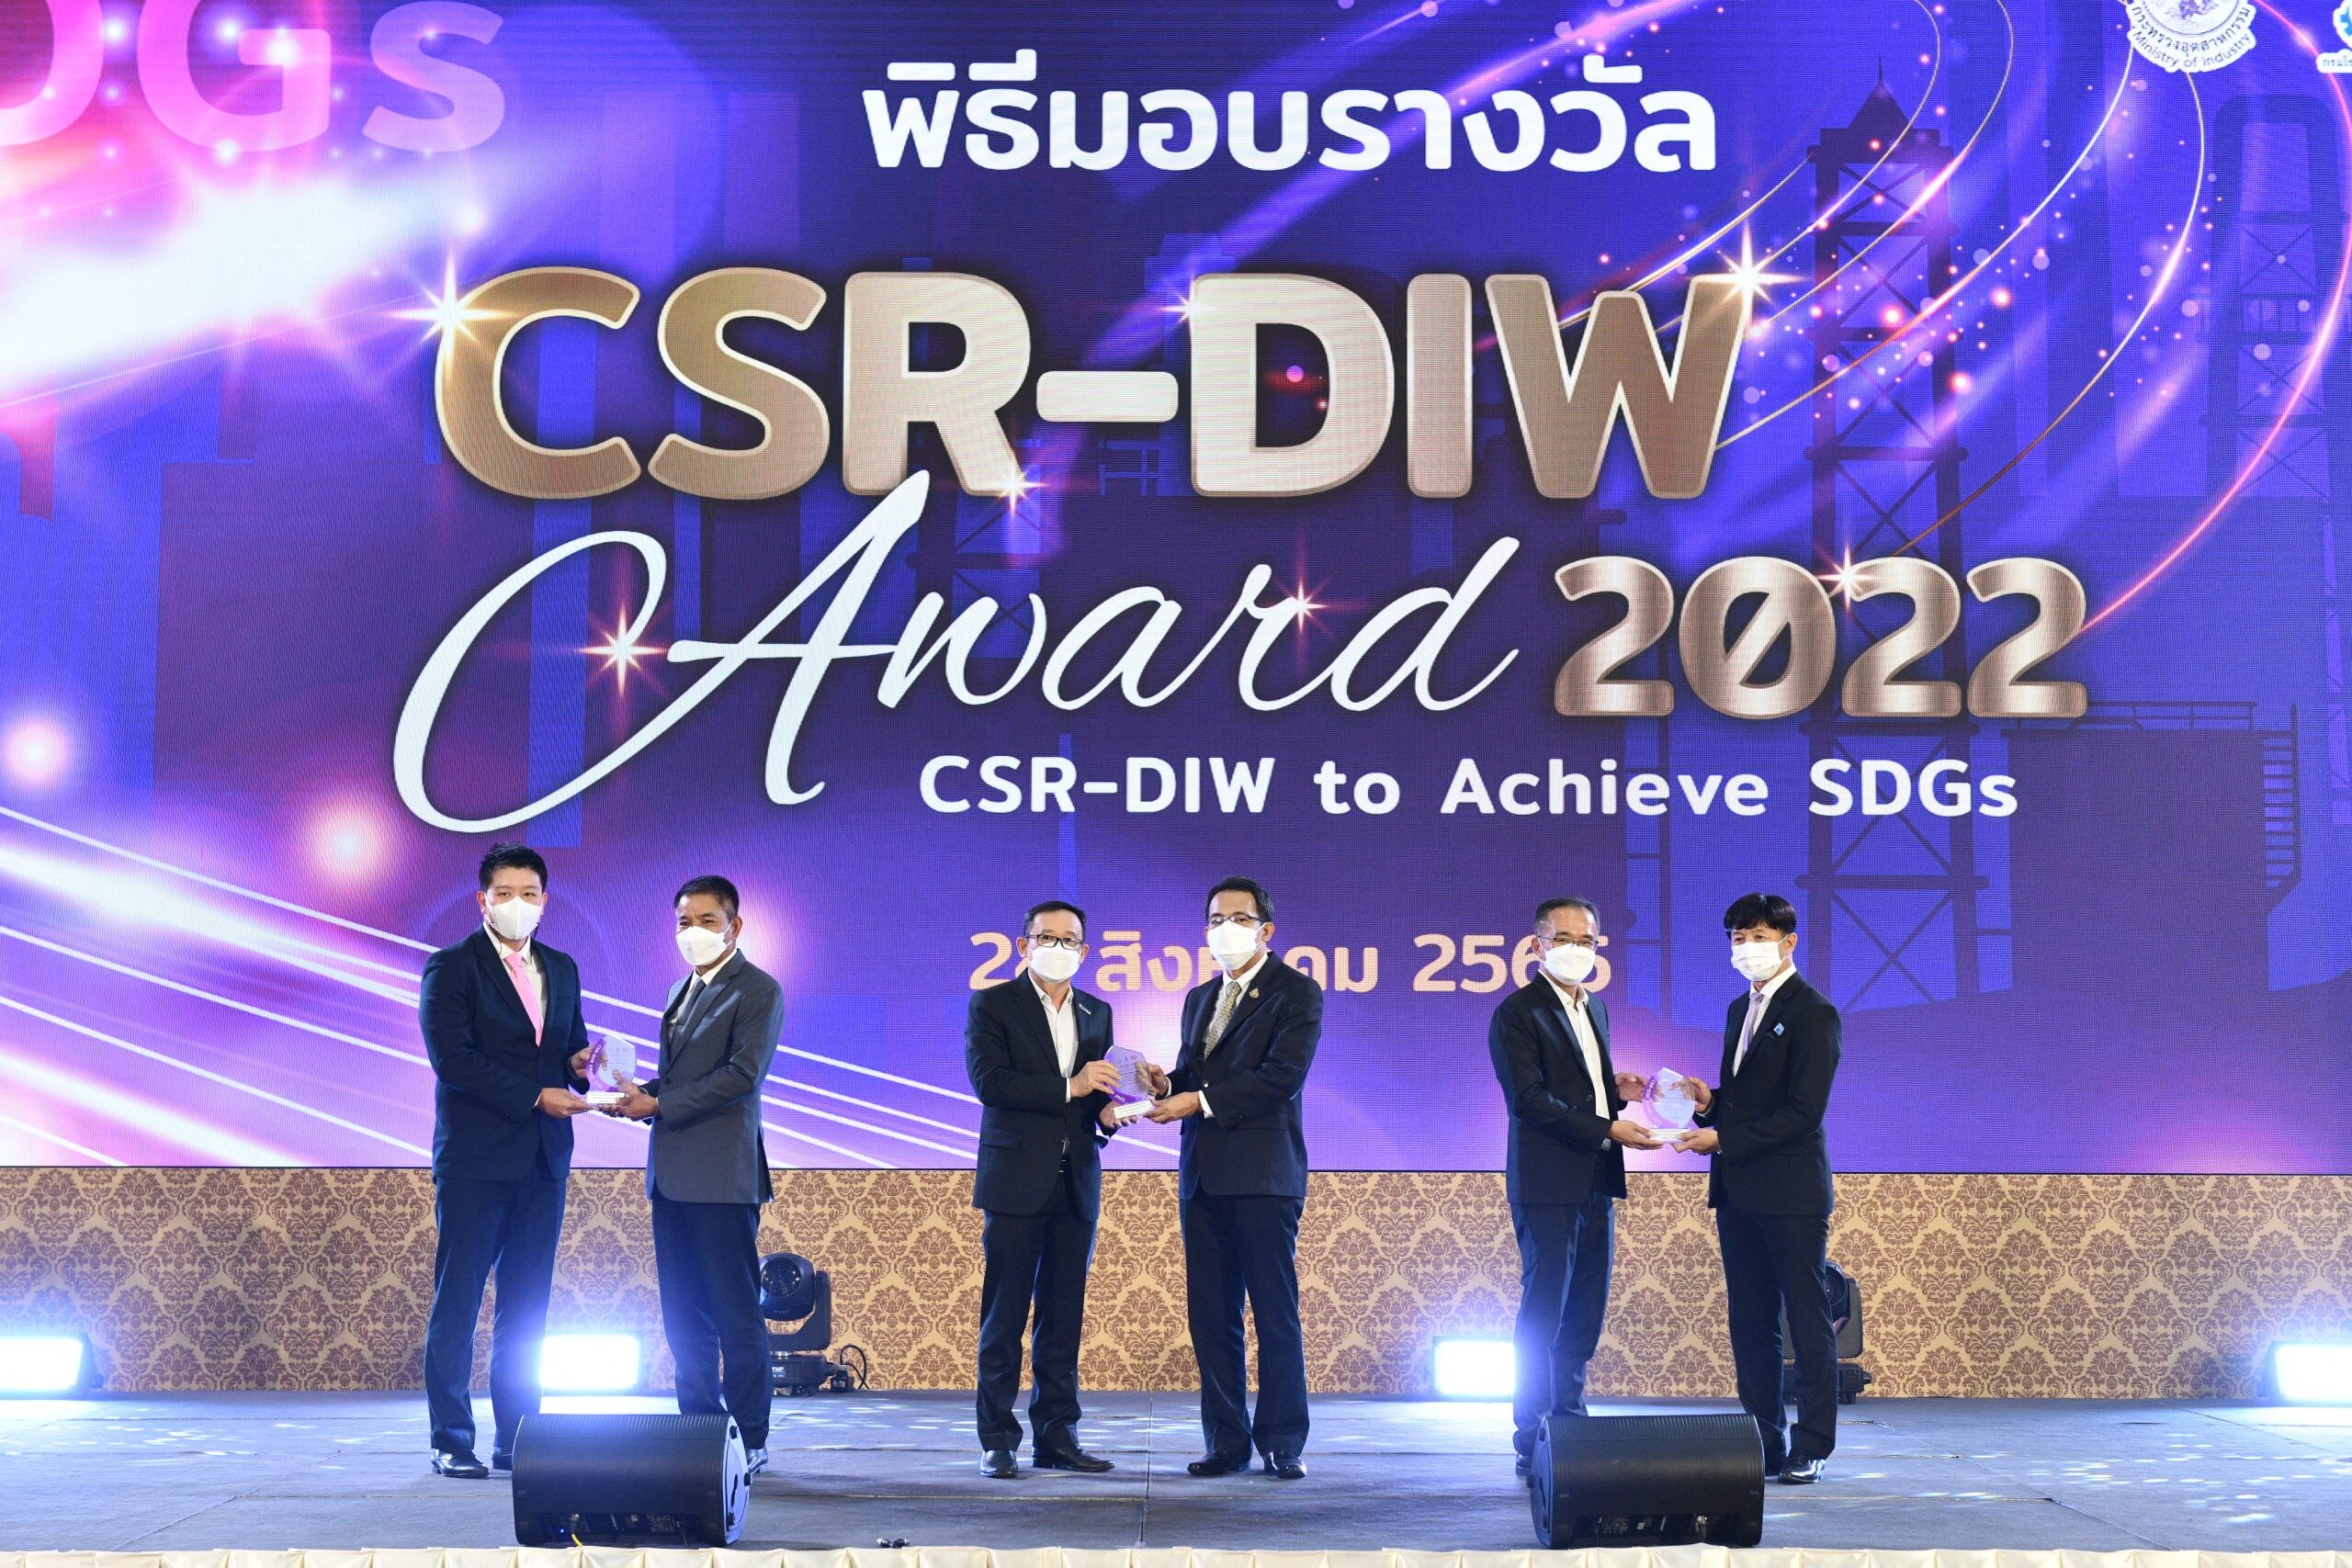 ฮิตาชิ เอนเนอร์ยี่ คว้ารางวัล CSR-DIW 2022 มุ่งสร้างความยั่งยืนสู่สังคม